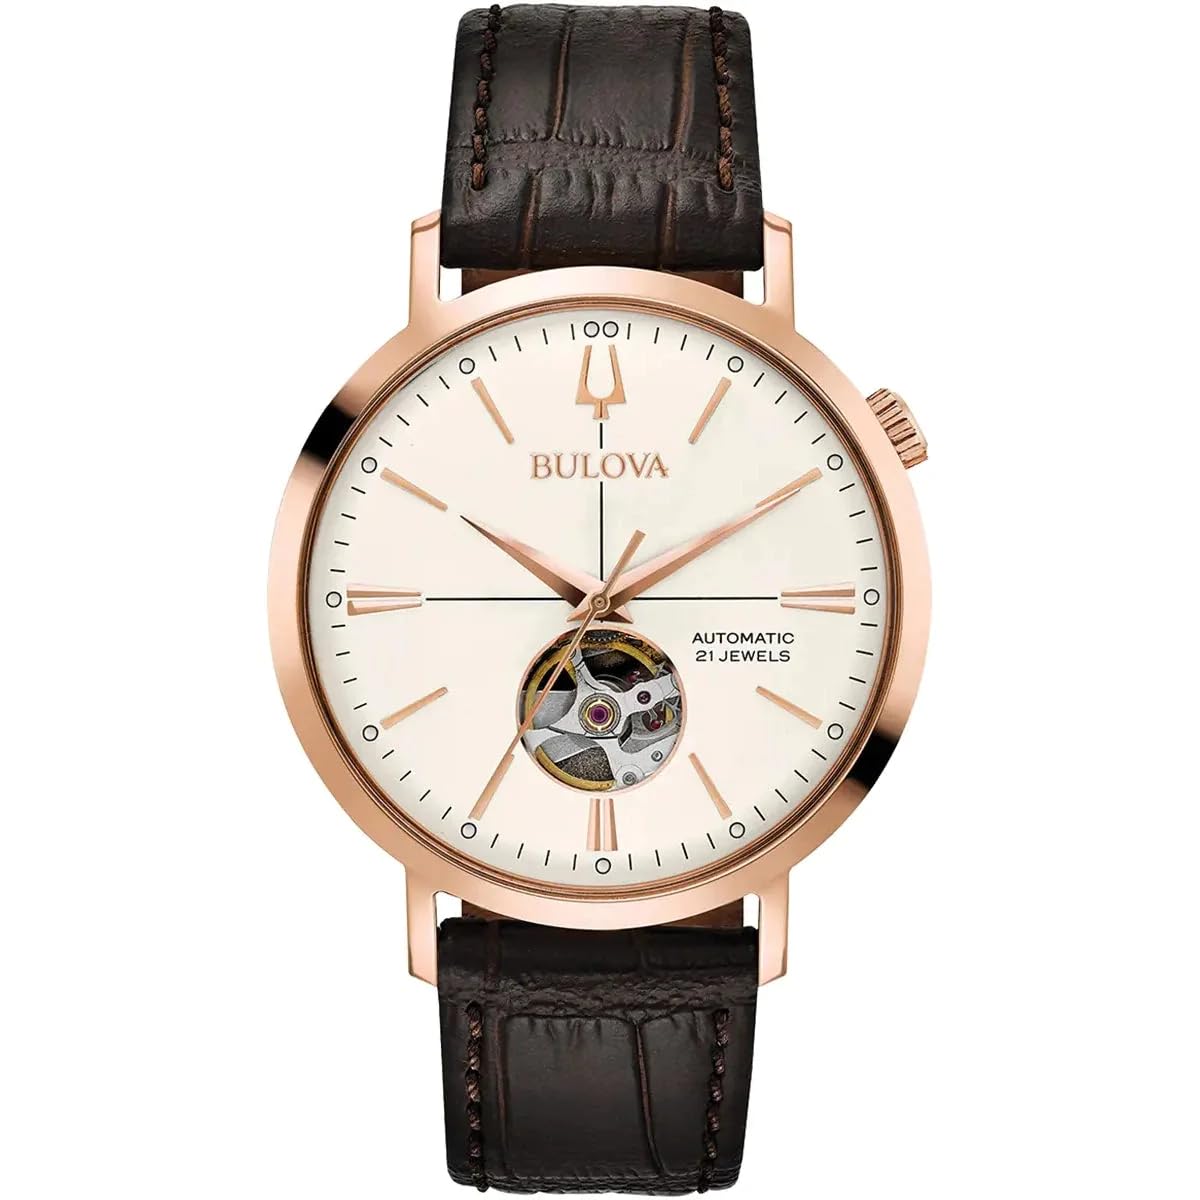 Bulova Herren Analog Automatik Uhr mit Leder Armband 97A136